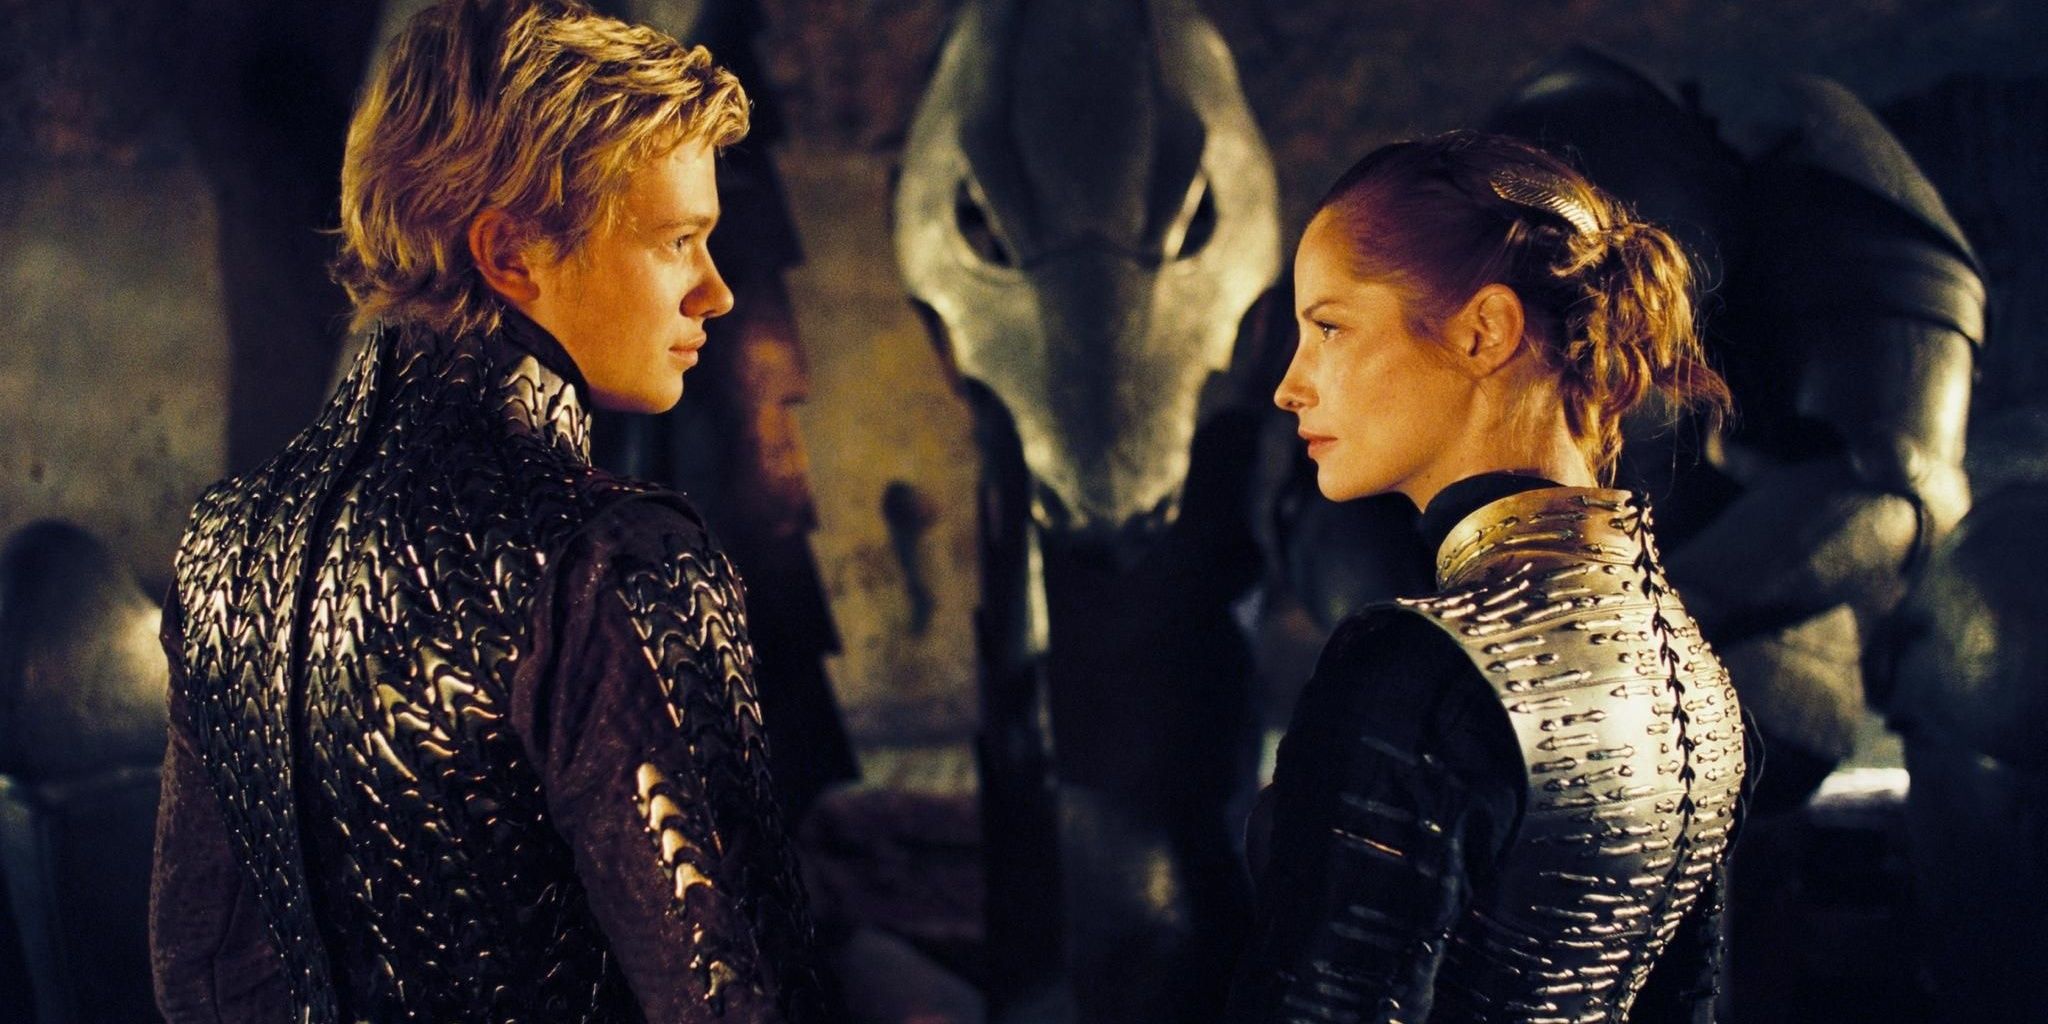 Uma cena do filme Eragon com os personagens centrais se encarando